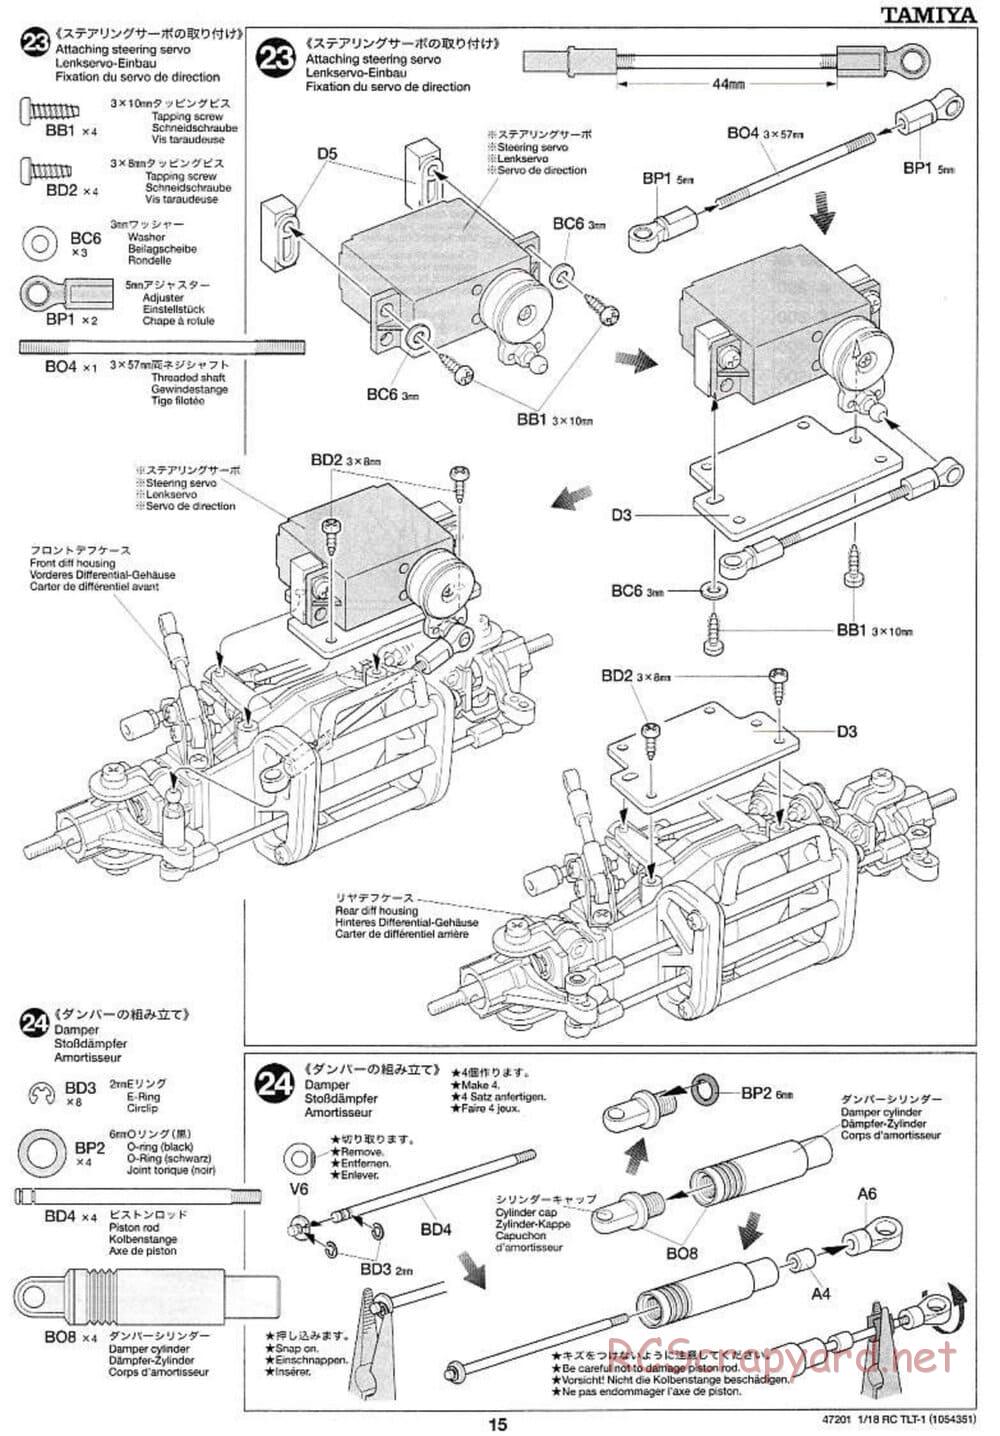 Tamiya - Rock Buster - TLT-1 Chassis - Manual - Page 15